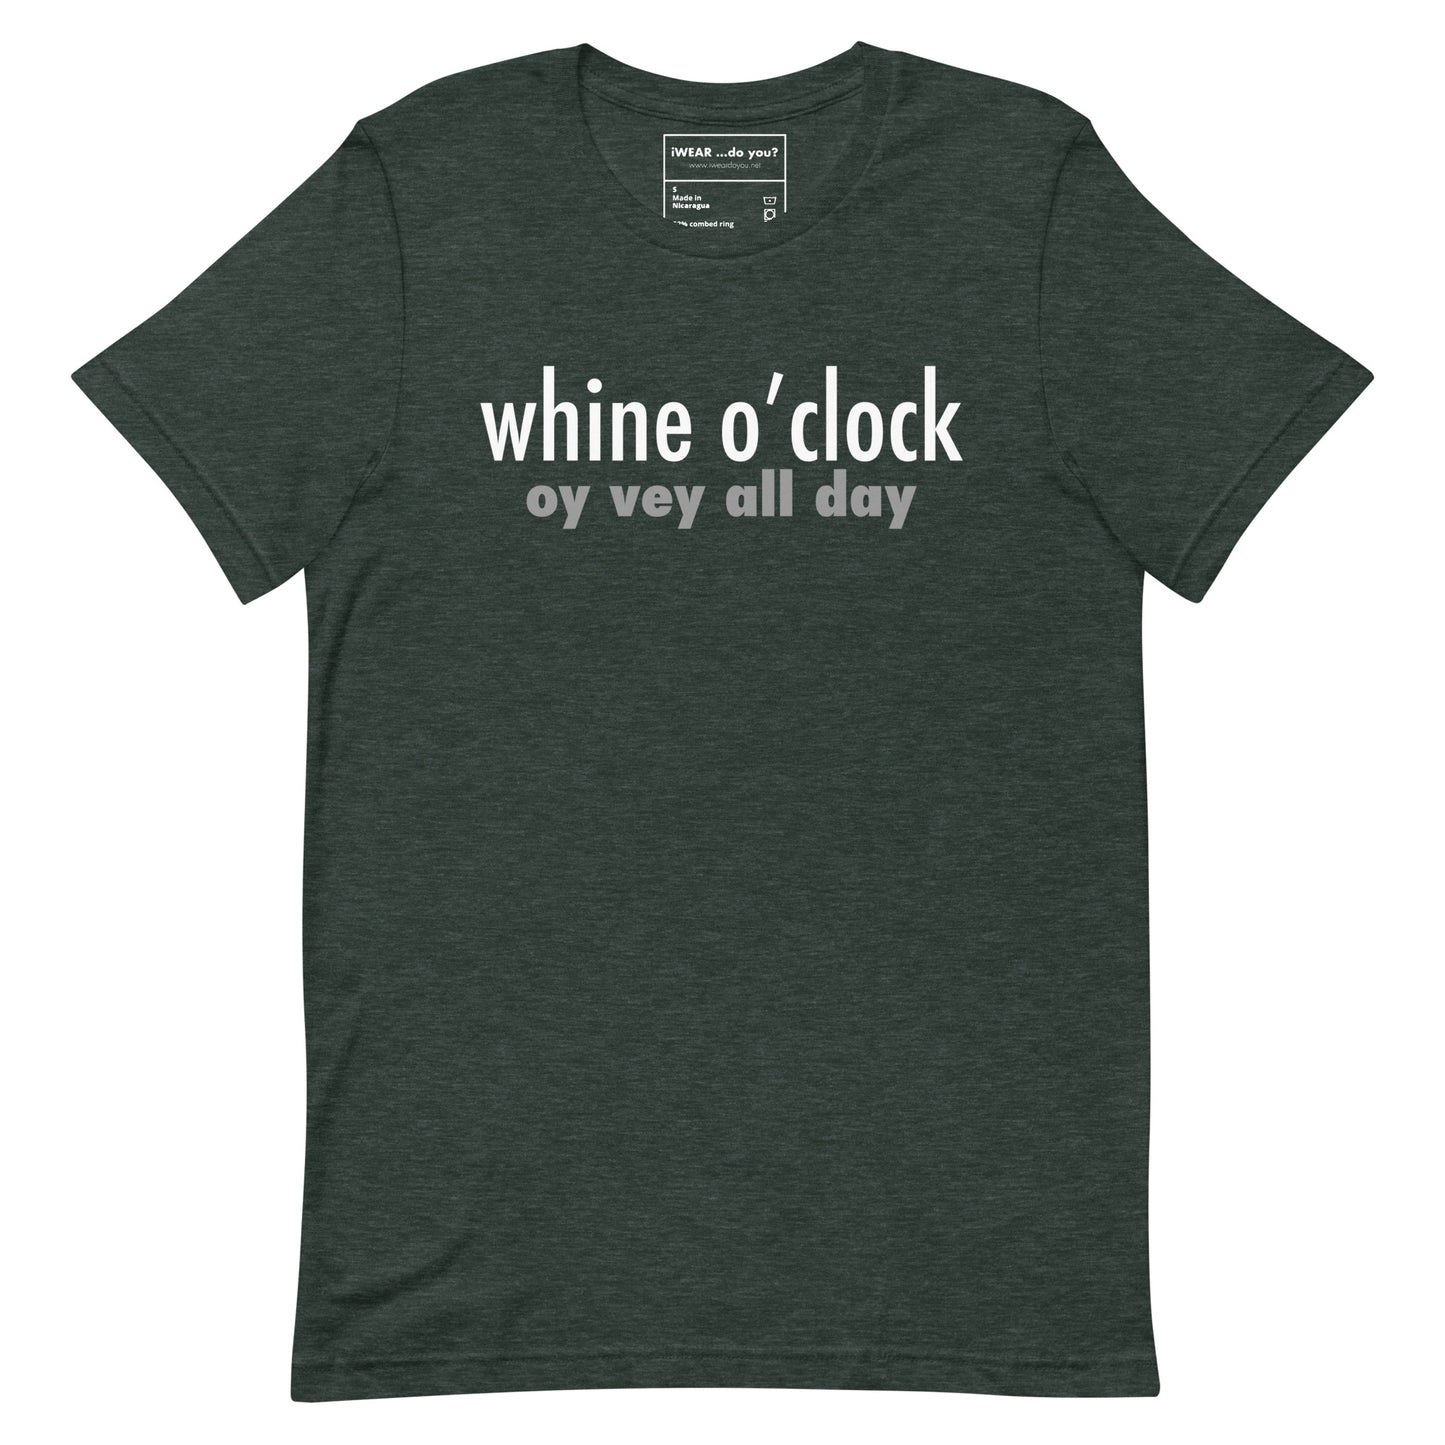 Whine o’clock tee